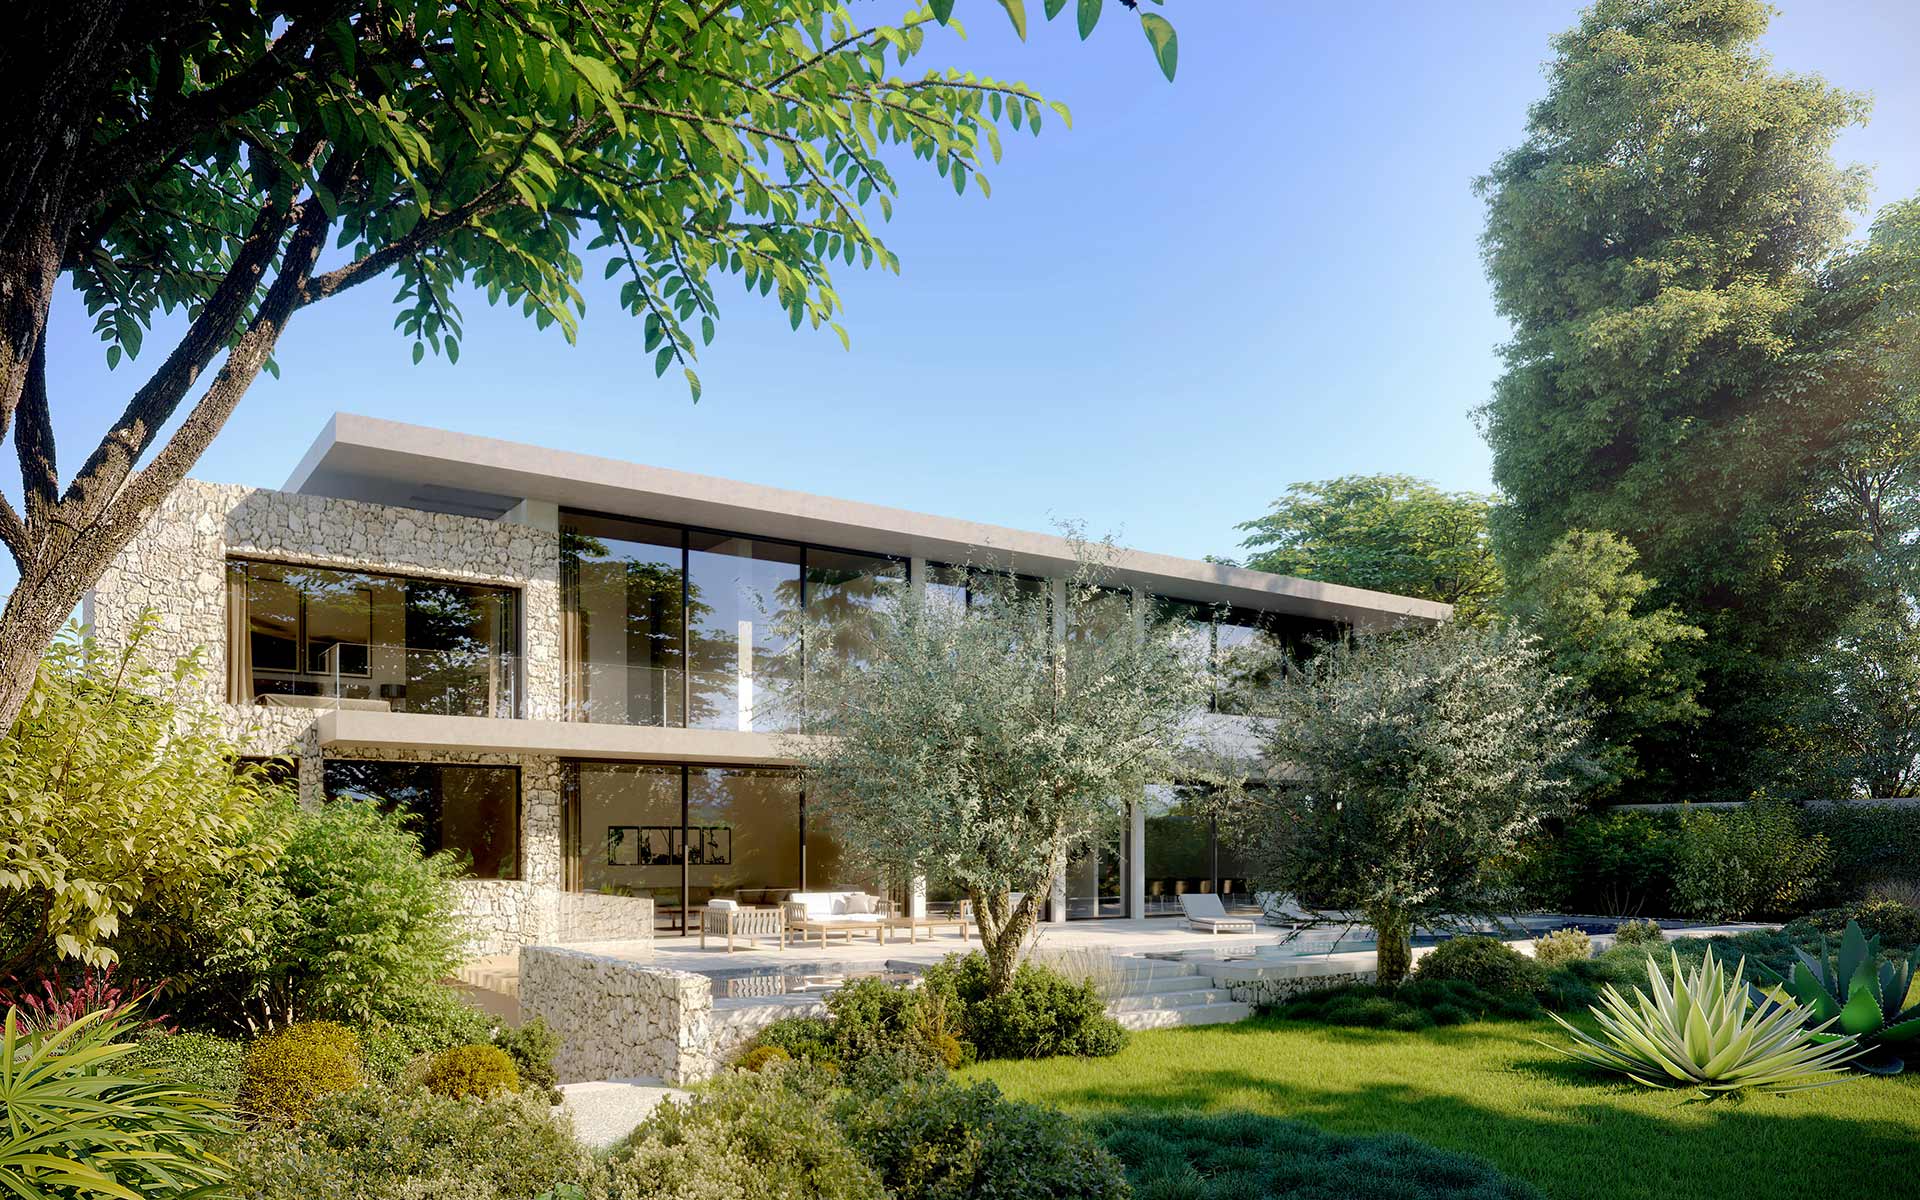 Réalisation 3D de perspective d'un jardin de villa pour un projet immobilier